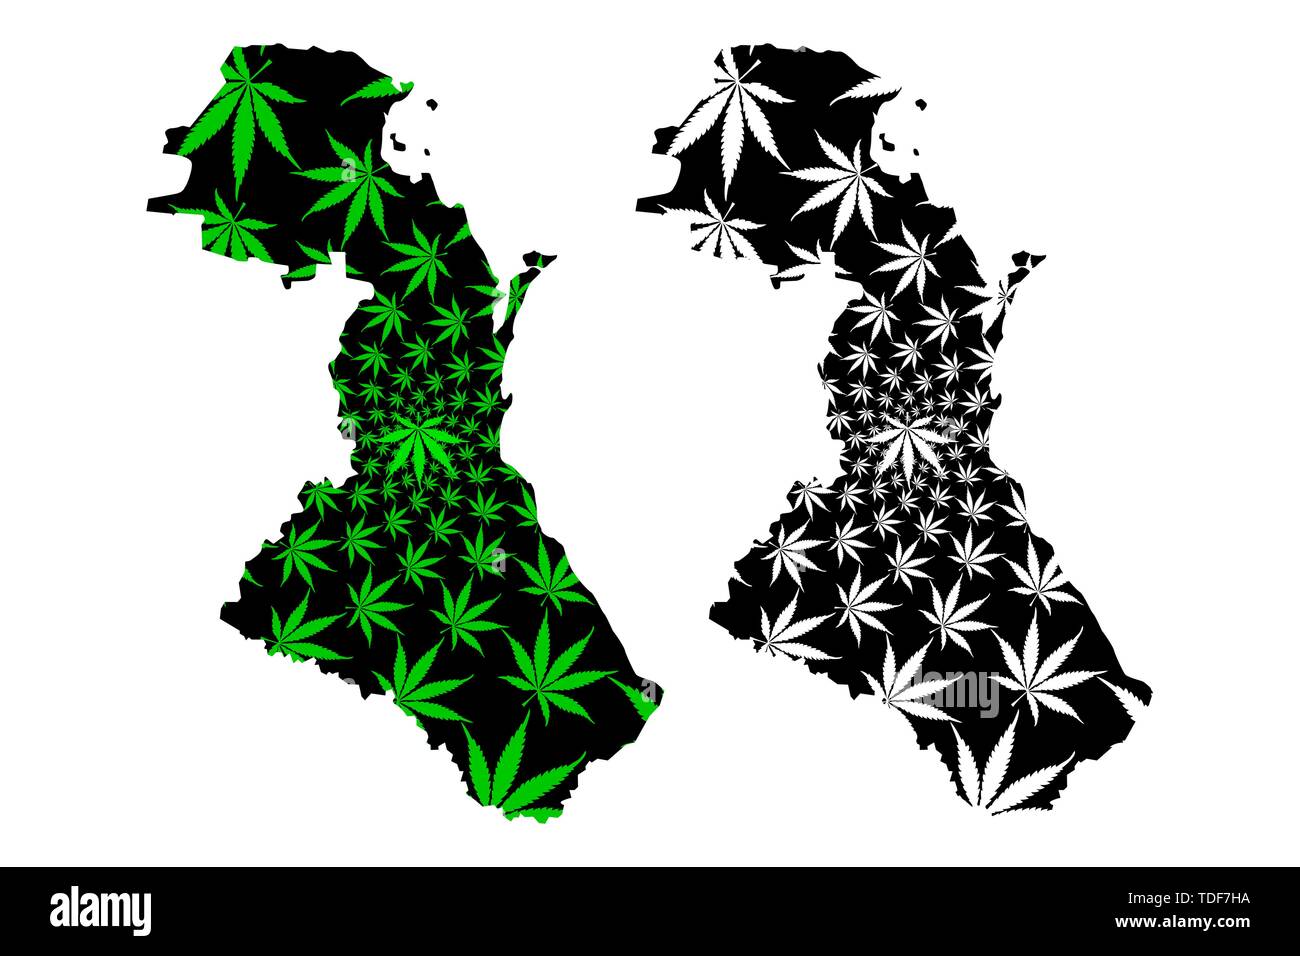 In Daghestan (Russia, soggetti della Federazione Russa, Repubbliche di Russia) mappa è progettato Cannabis leaf verde e nero, Repubblica del Daghestan mappa mad Illustrazione Vettoriale